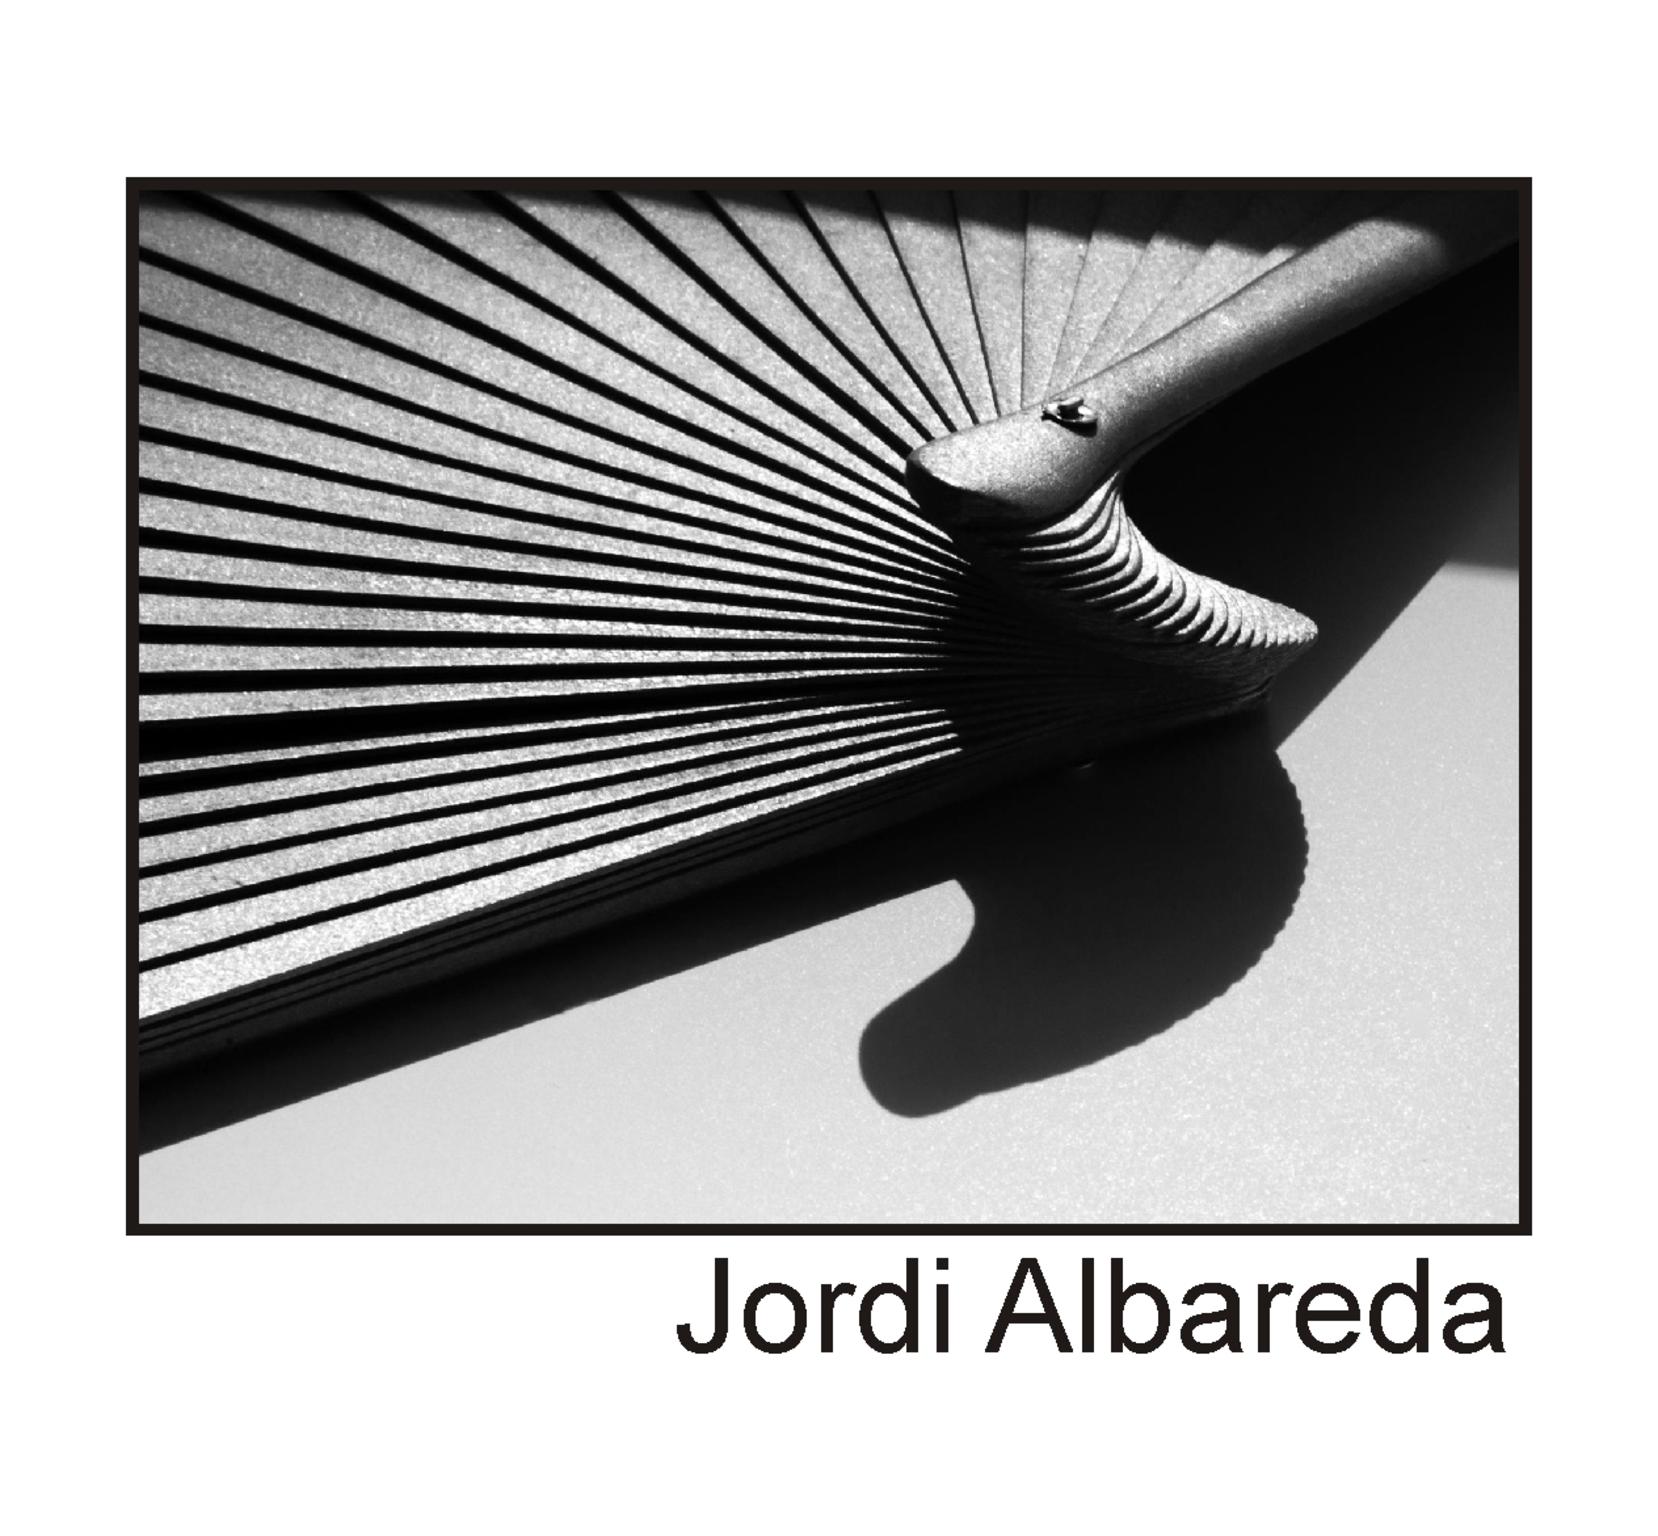  Jordi Albareda 2020